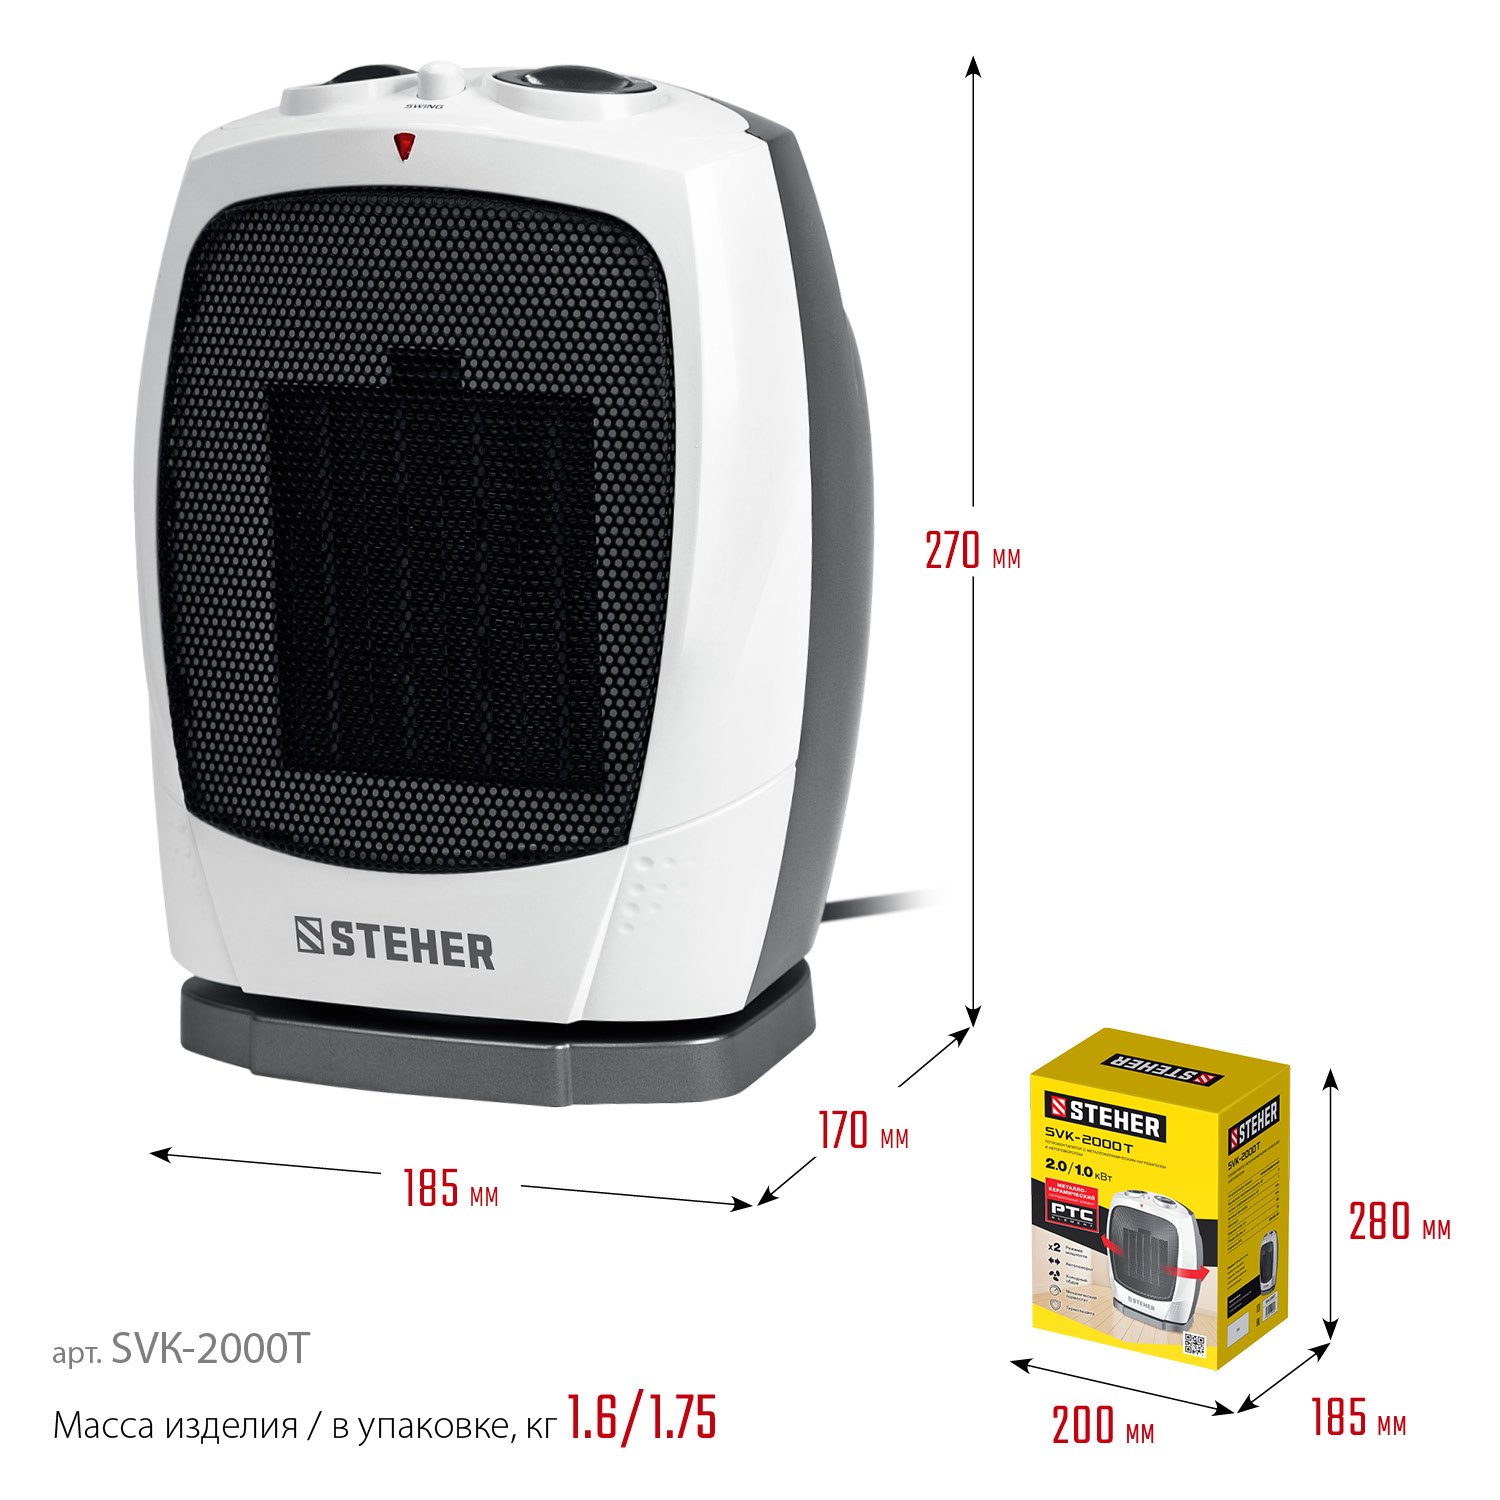 STEHER 2 кВт, тепловентилятор, металло-керамический нагревательный элемент, автоповорот (SVK-2000T) (SVK-2000T)